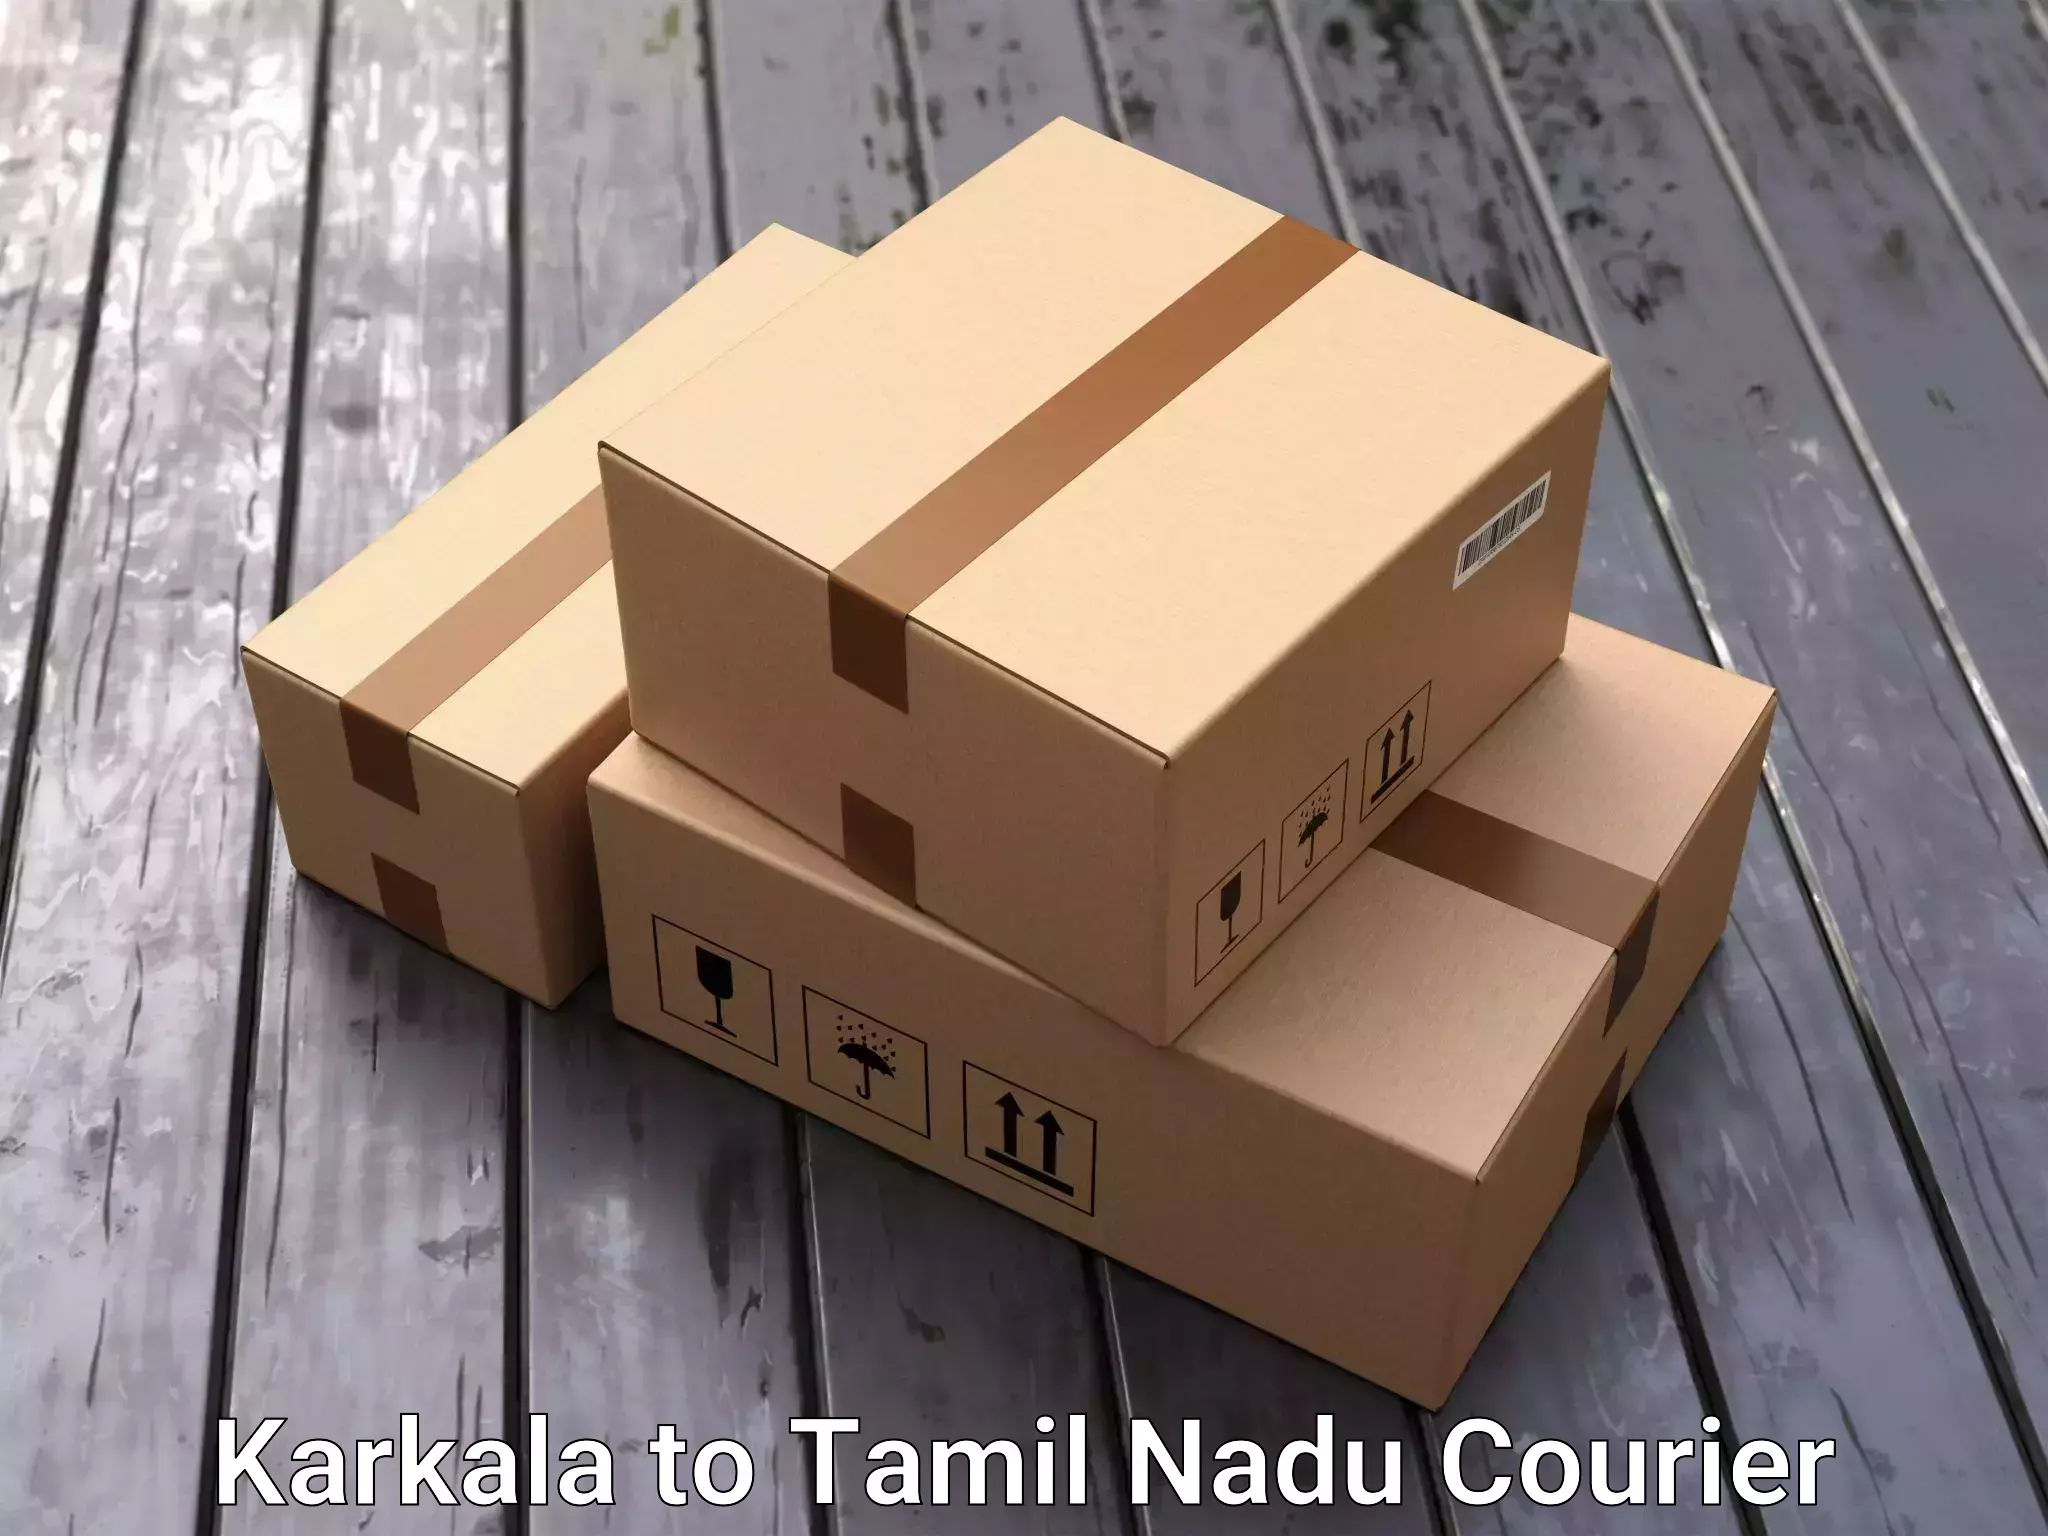 Furniture transport solutions Karkala to Omalur